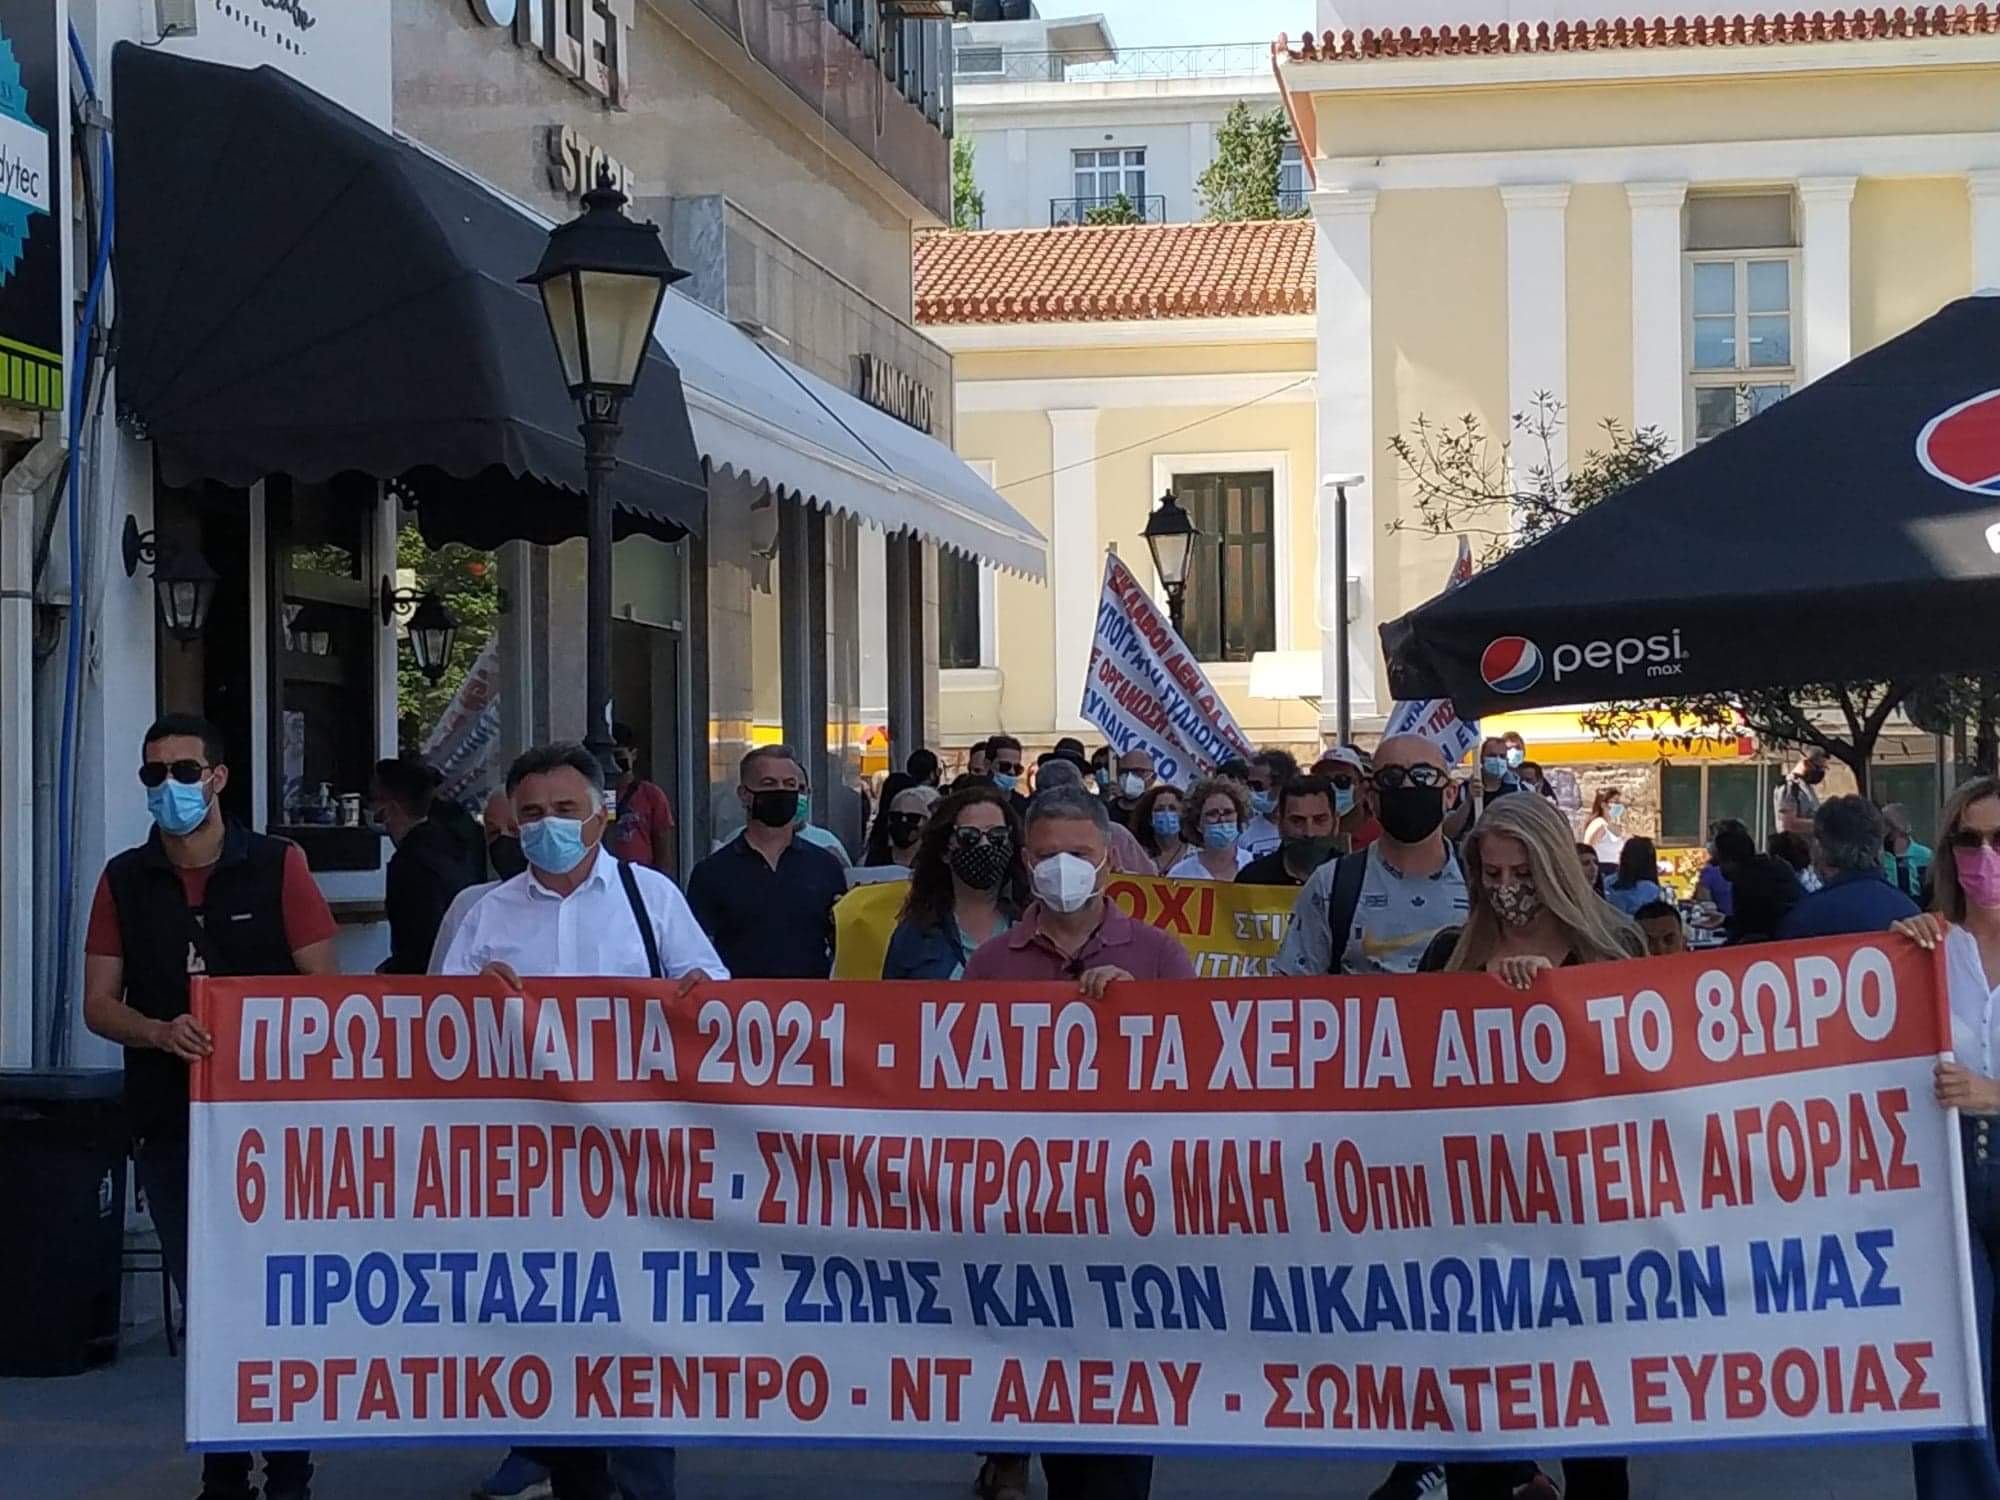 Εύβοια – Χαλκίδα: Απεργιακή συγκέντρωση στην πλατεία Αγοράς [εικόνες]